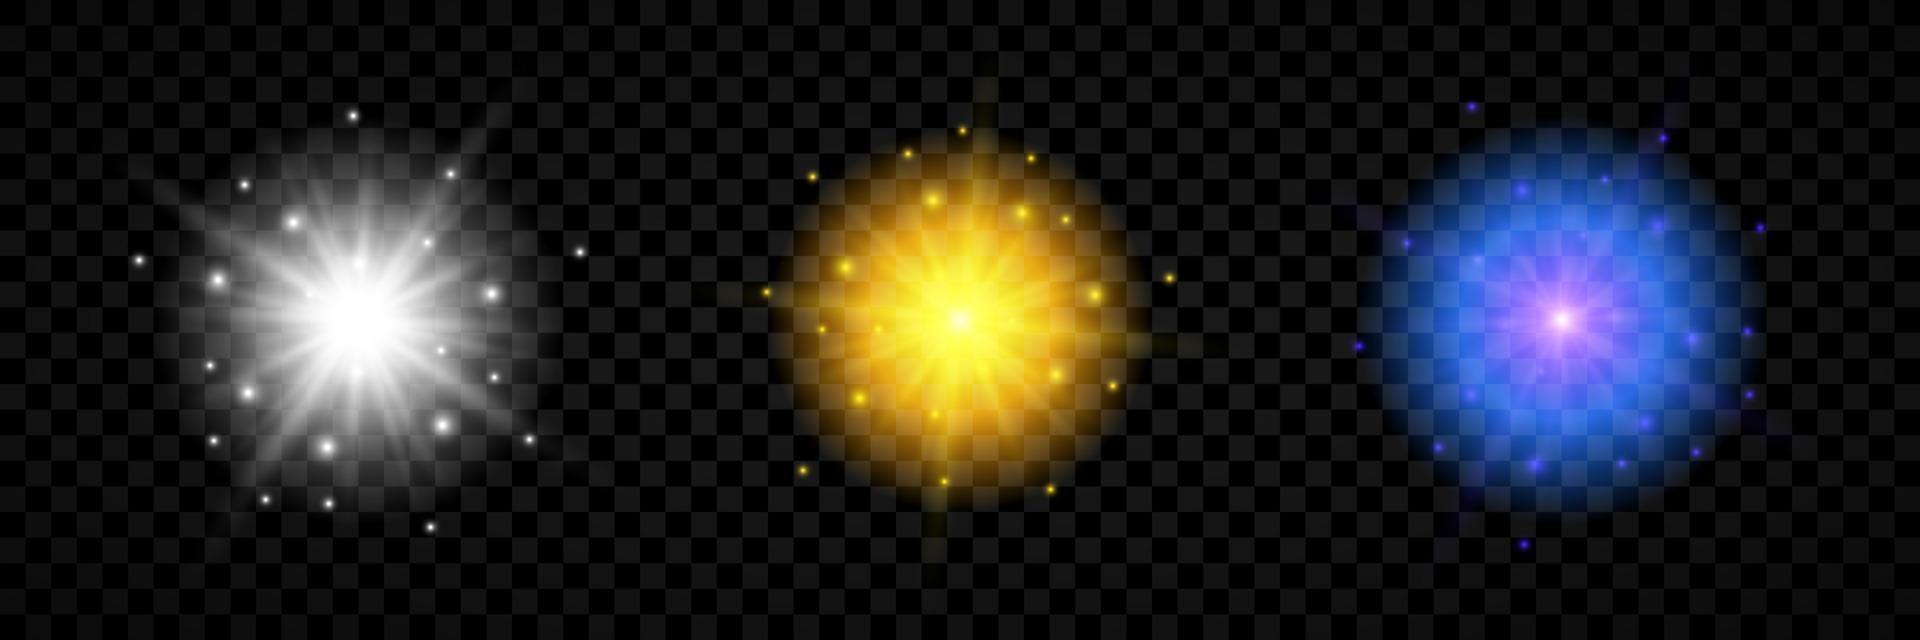 efecto de luz de destellos de lente. conjunto de tres luces brillantes blancas, amarillas y azules efectos de explosión estelar con destellos vector